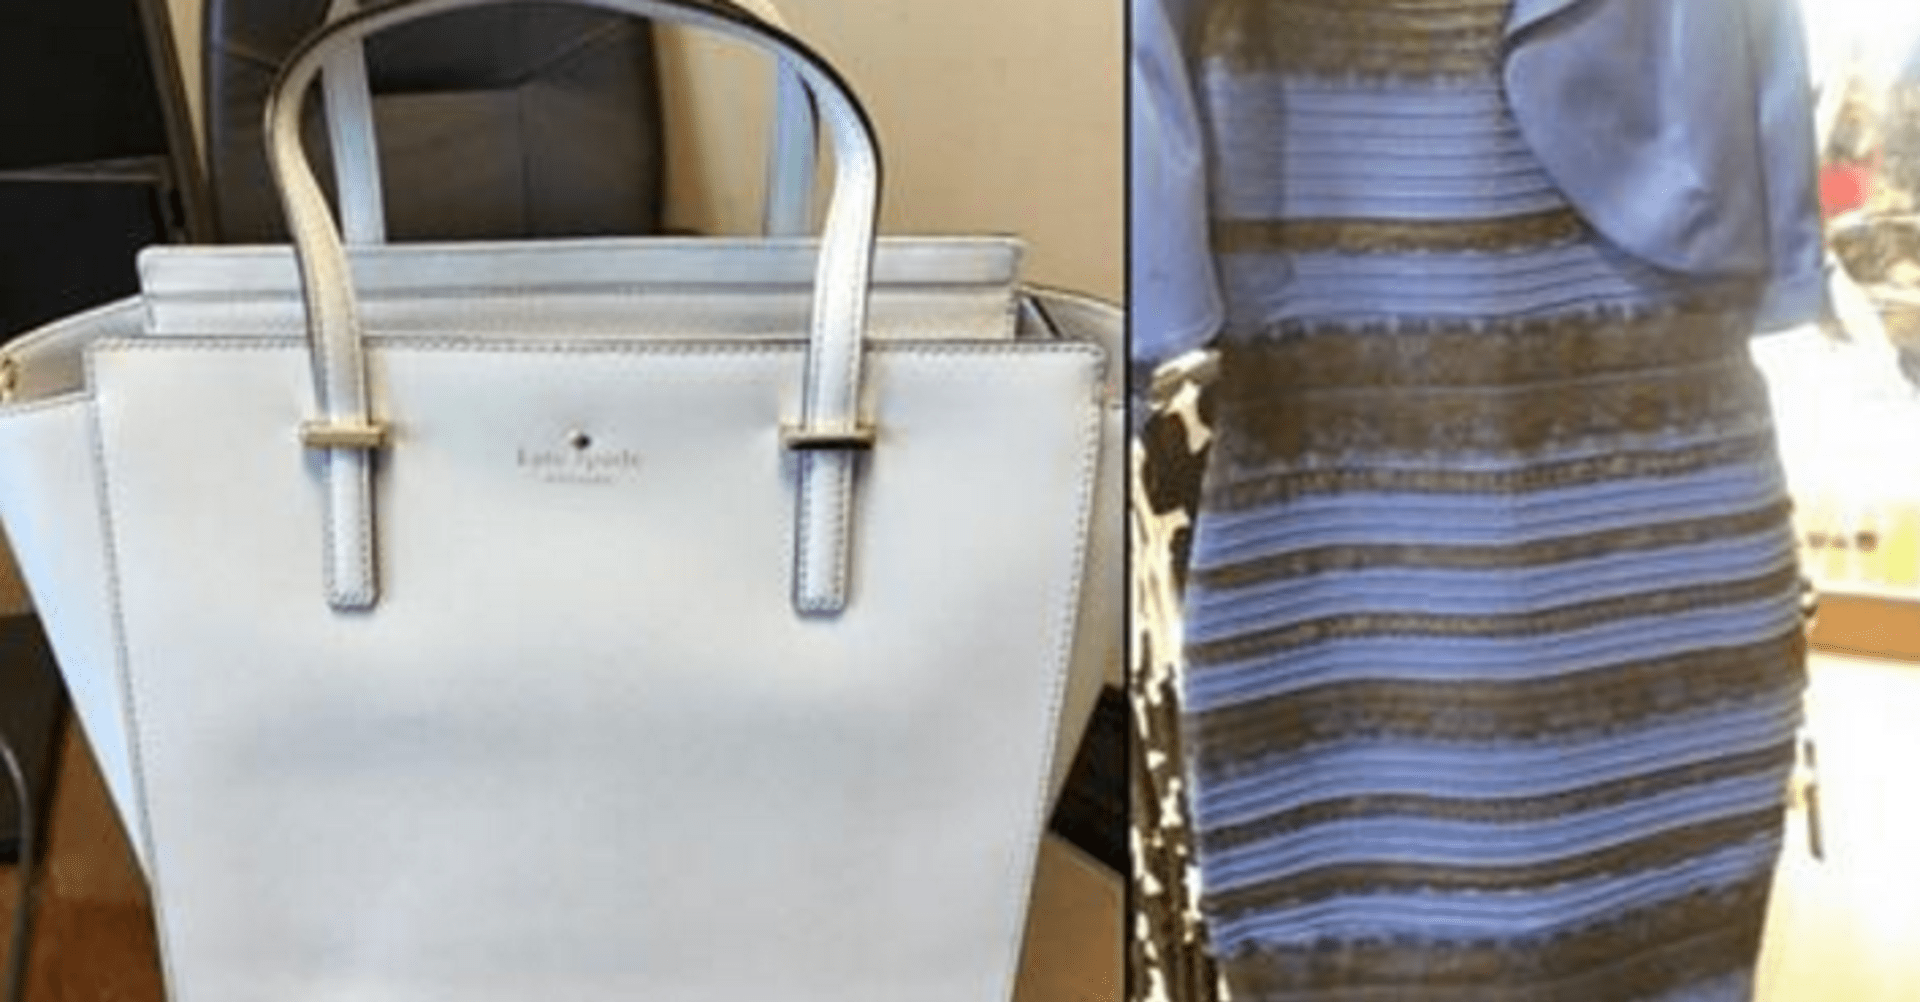 Je kabelka bílá, nebo modrá?